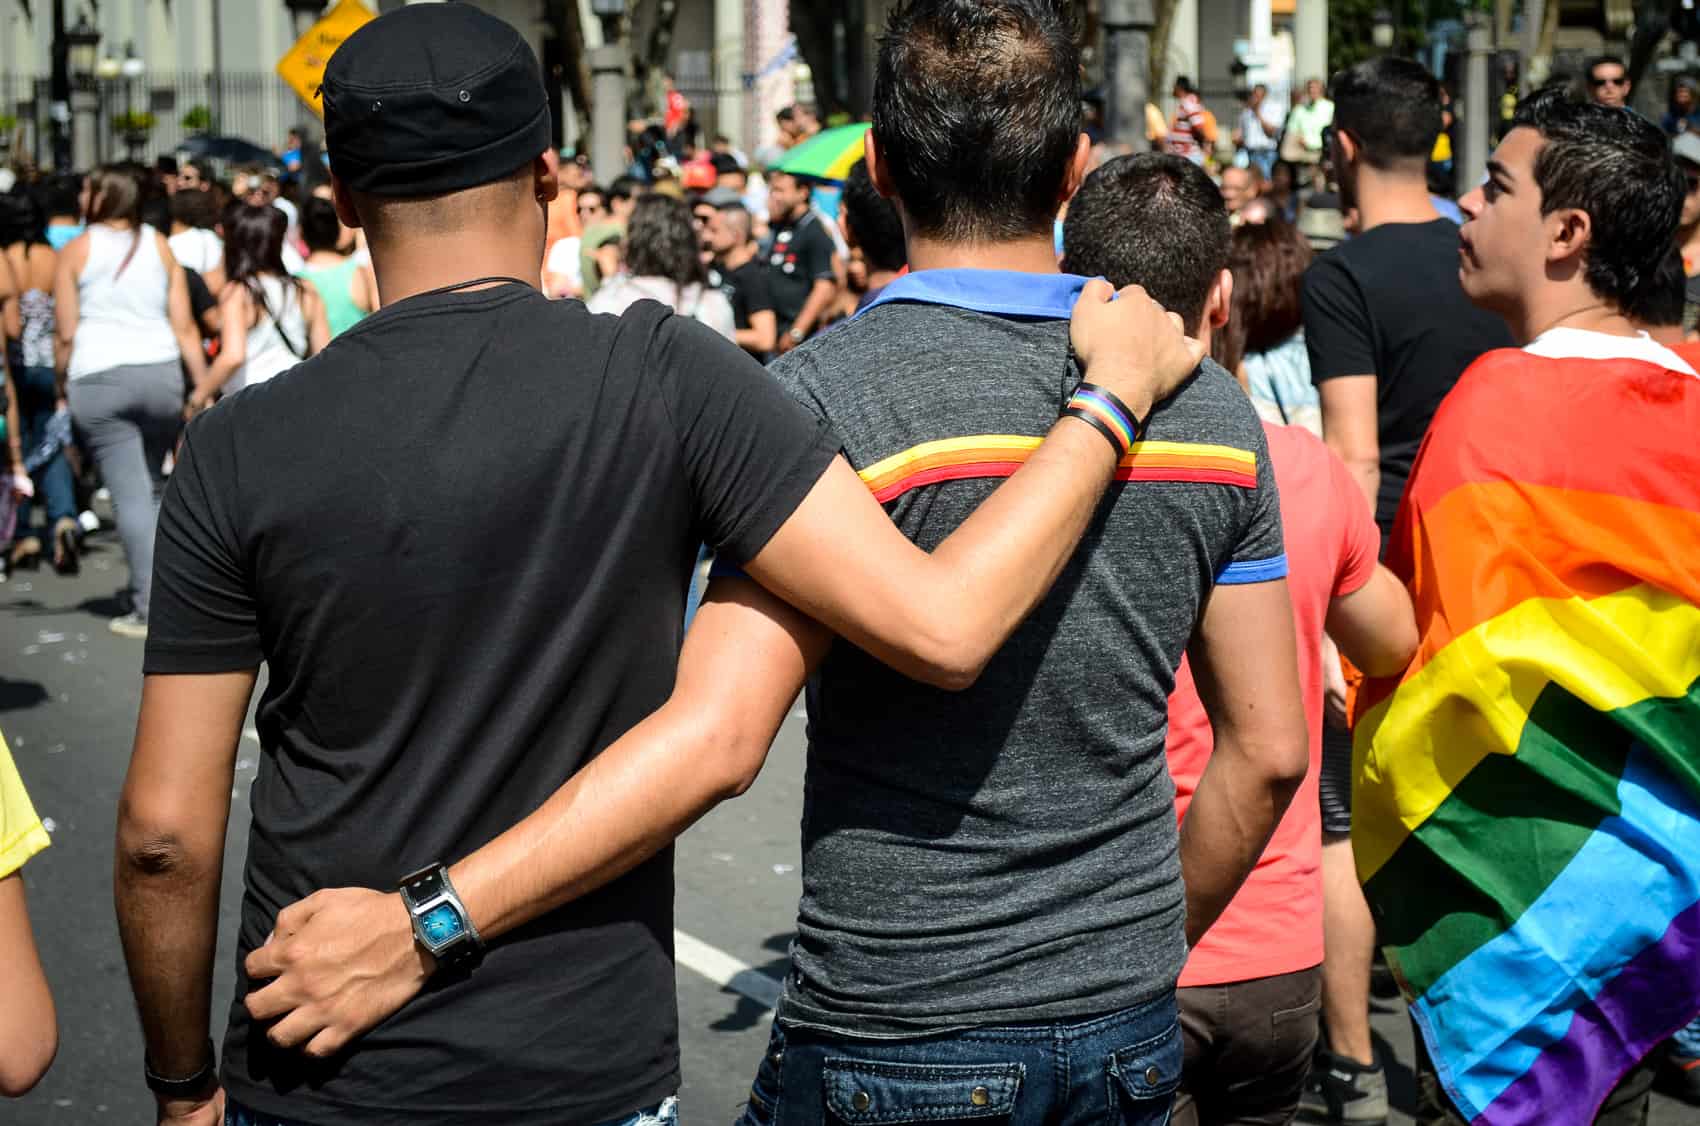 Gay rights Costa Rica: San José parade